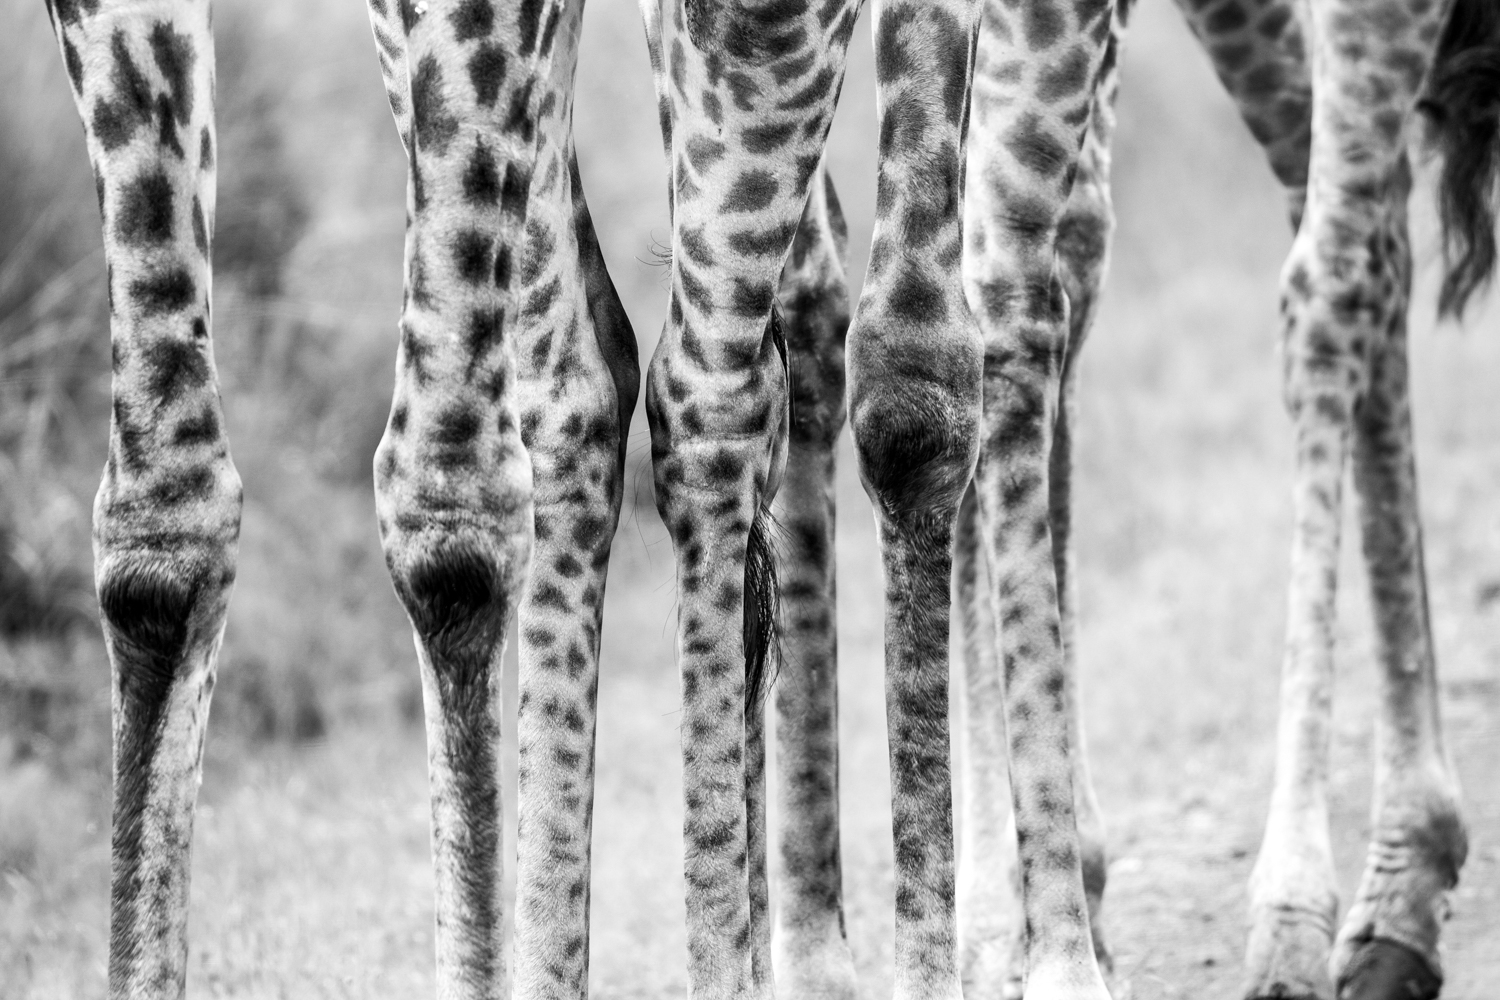 Giraffe Knees